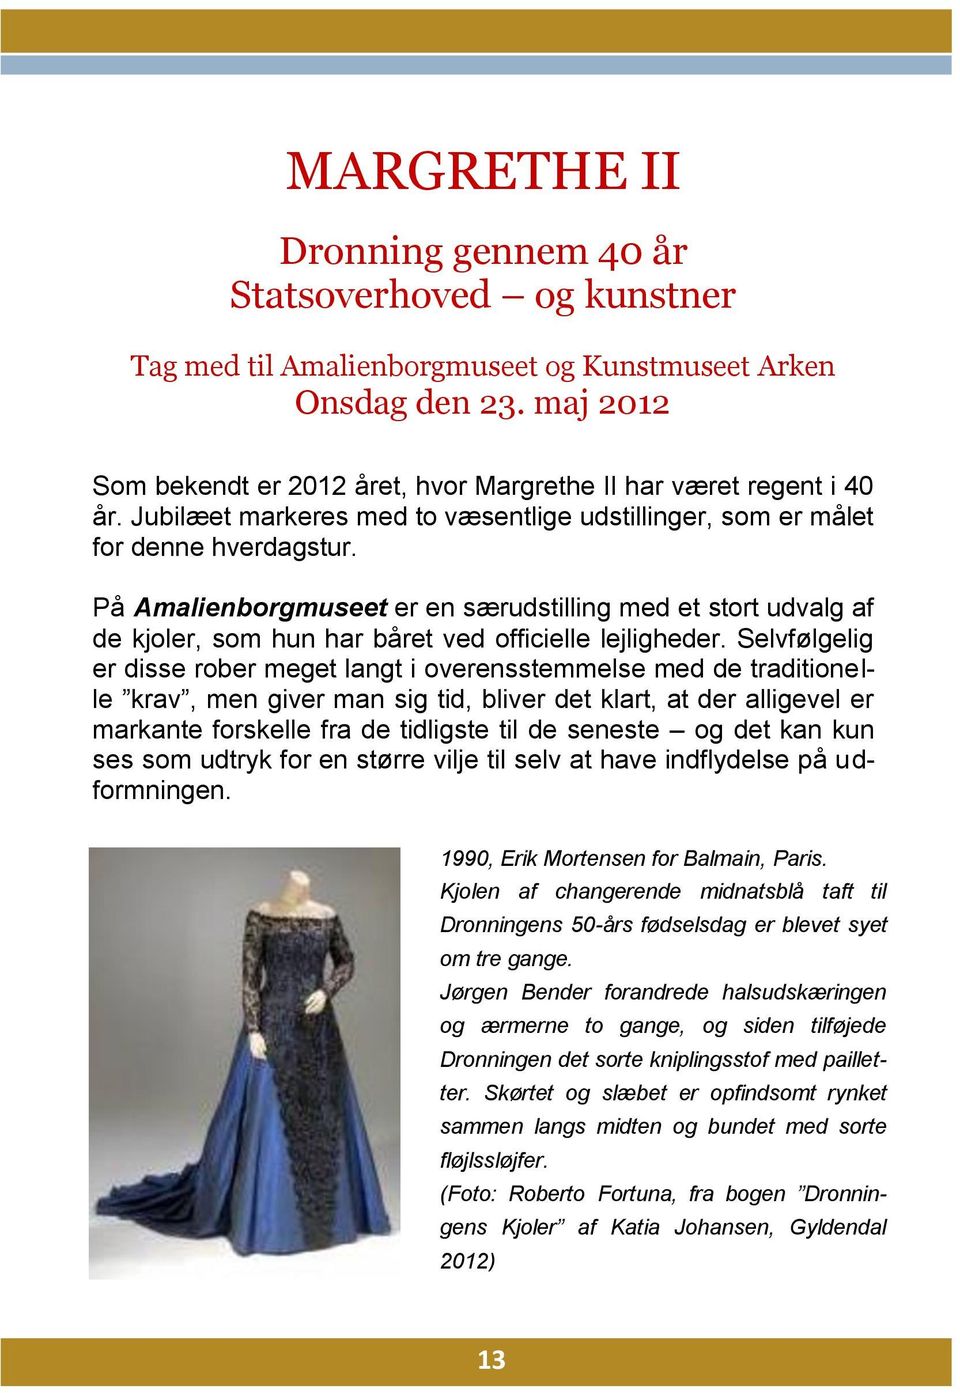 På Amalienborgmuseet er en særudstilling med et stort udvalg af de kjoler, som hun har båret ved officielle lejligheder.